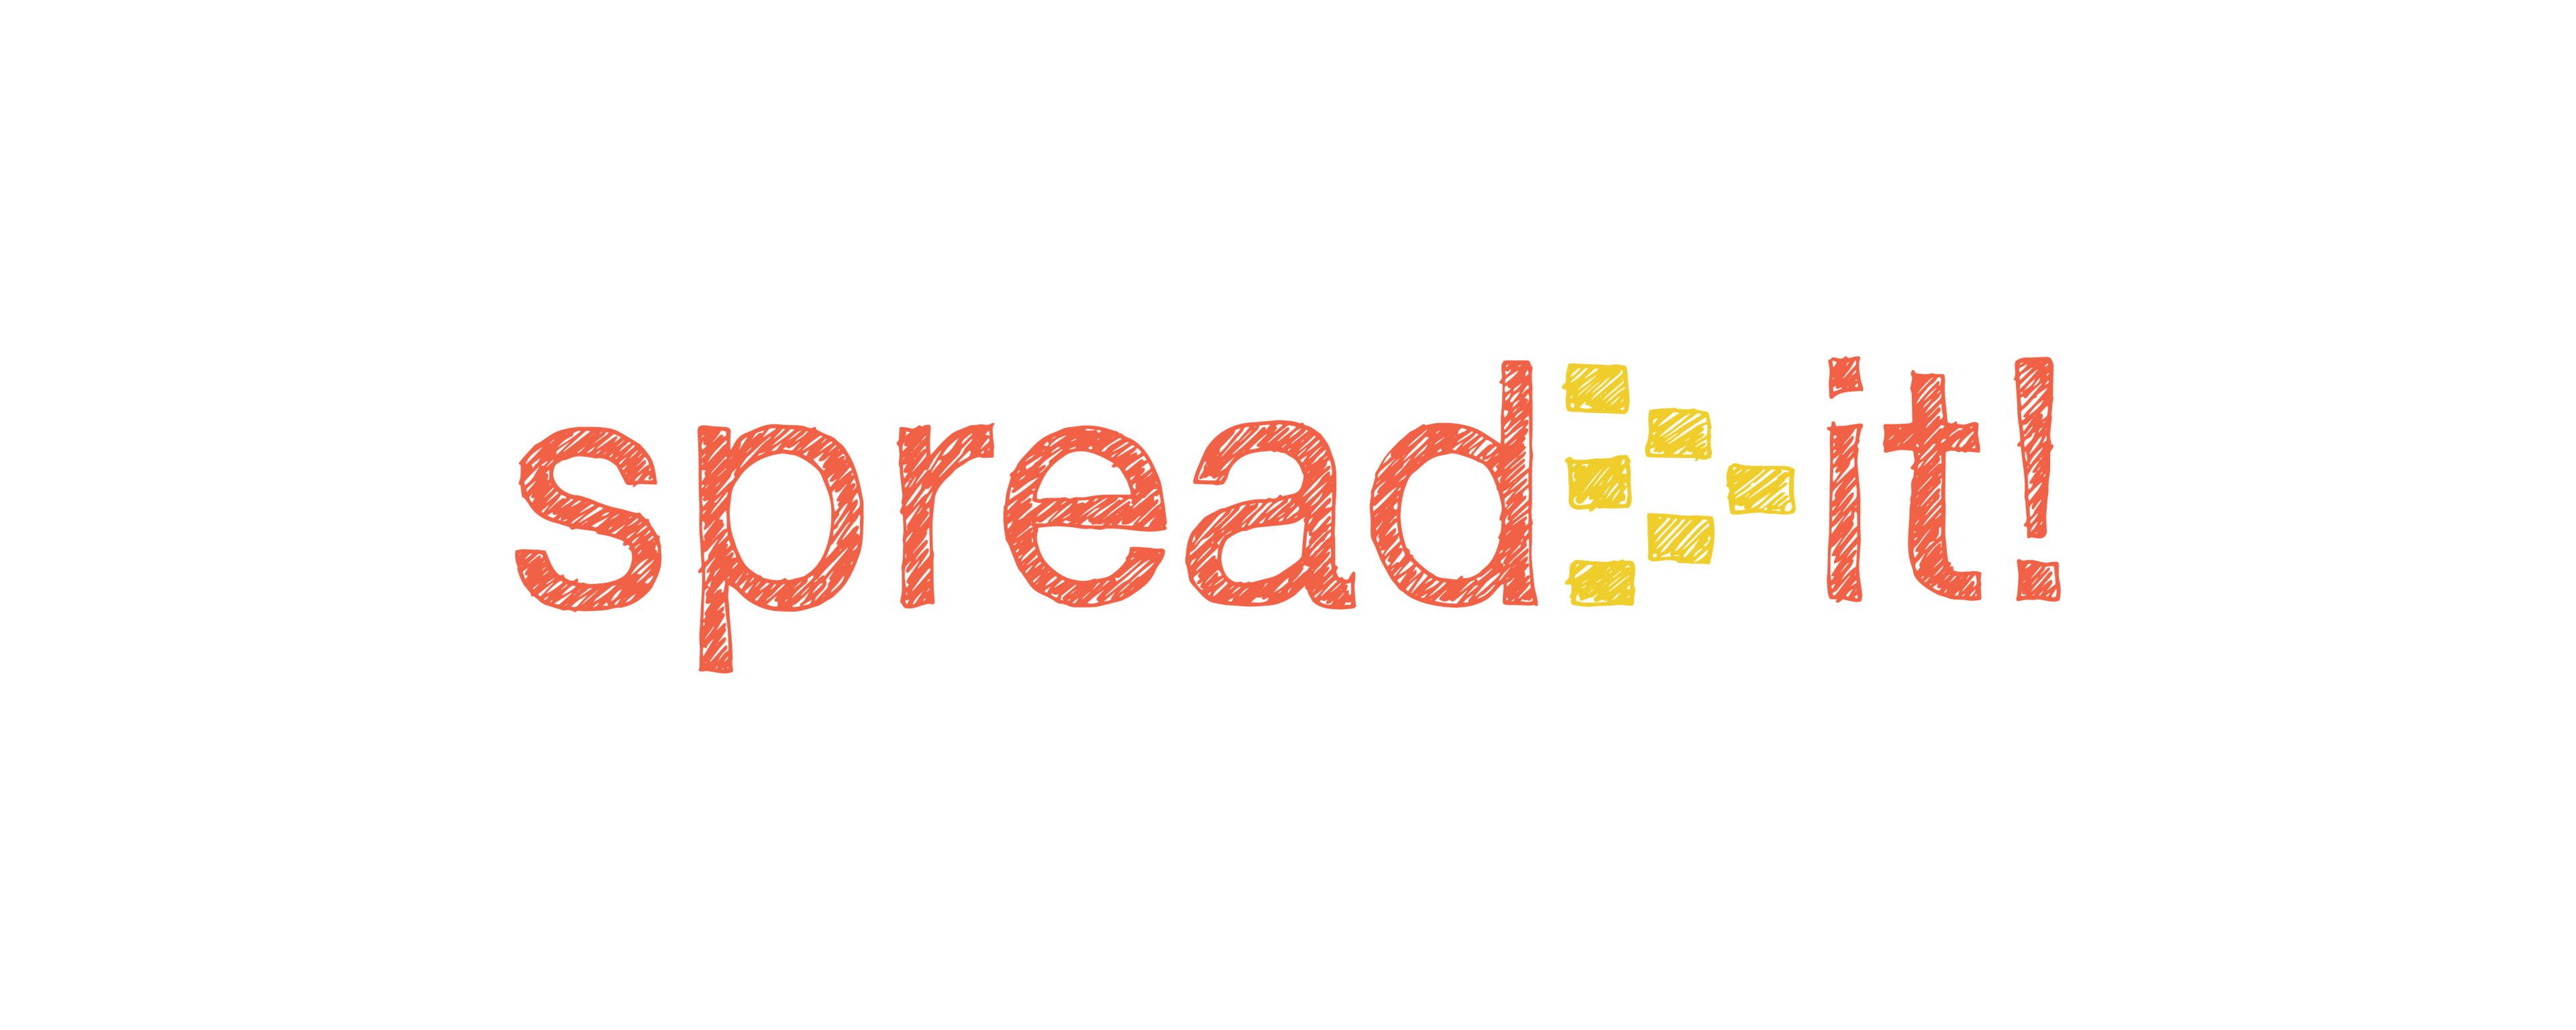 Spread-it